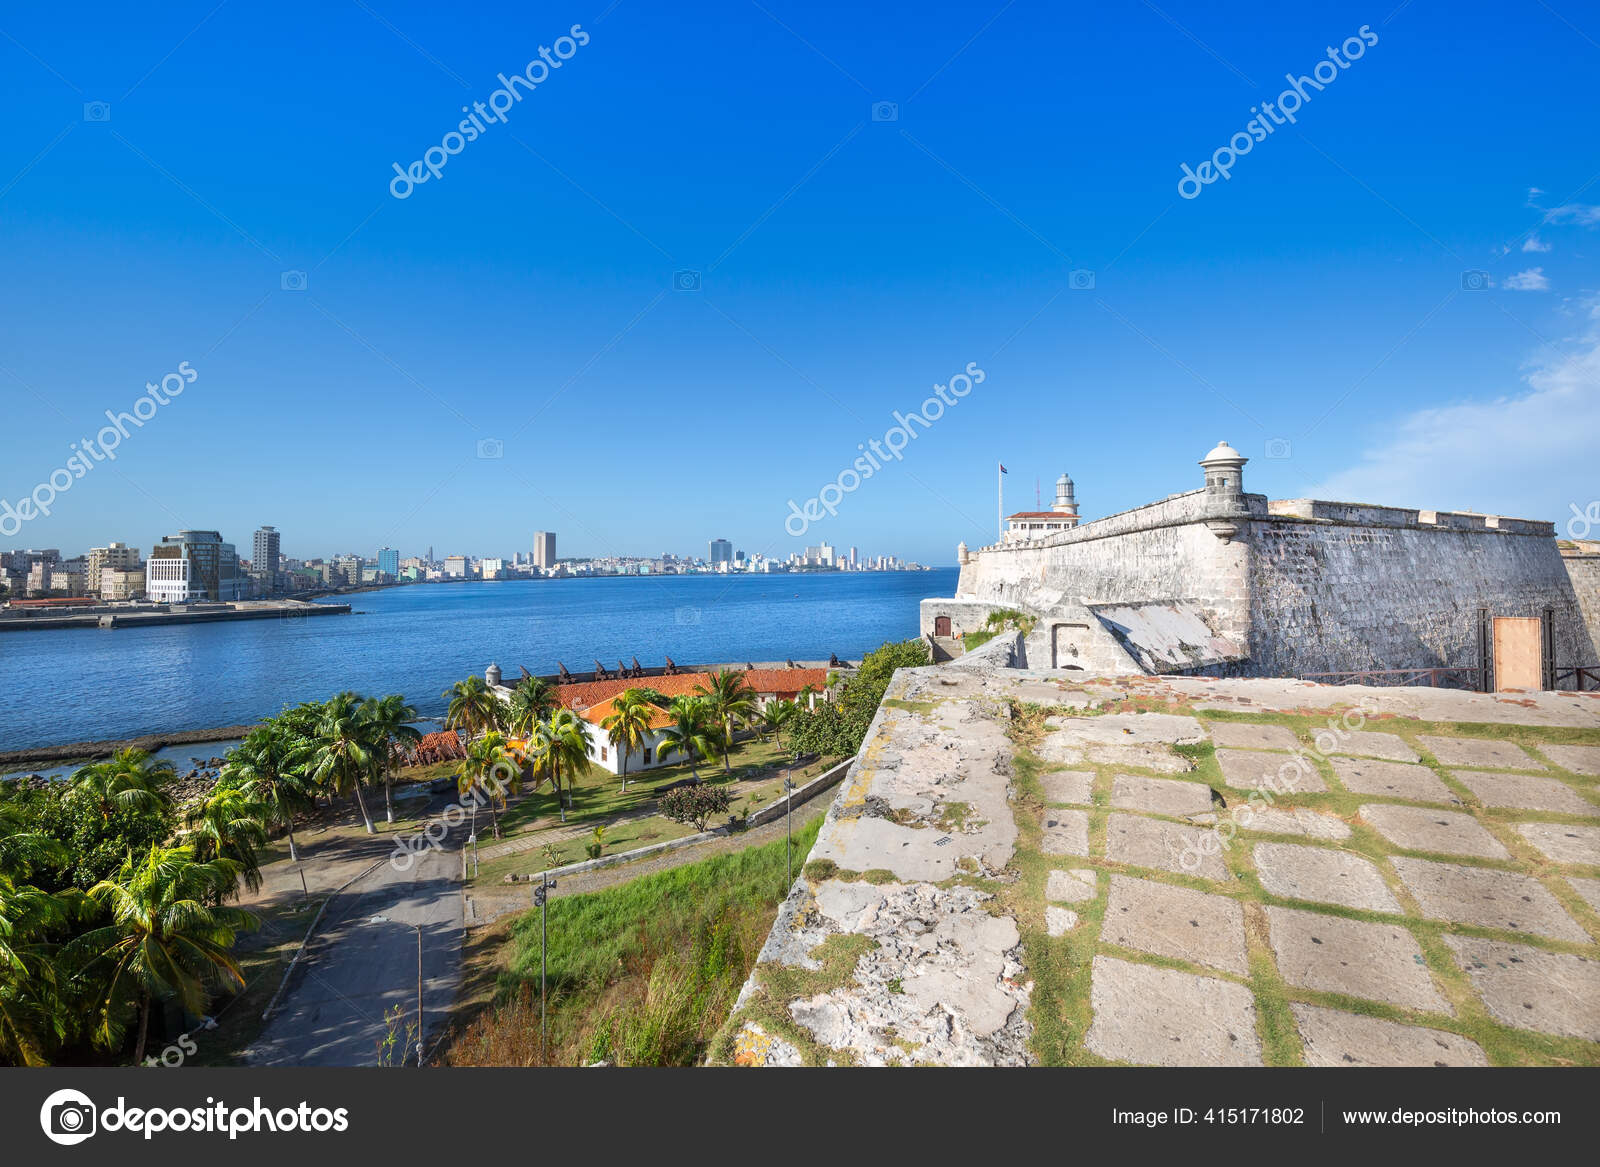 El Morro on a sunny day, Havana, Cuba - Castillo de los Tre…